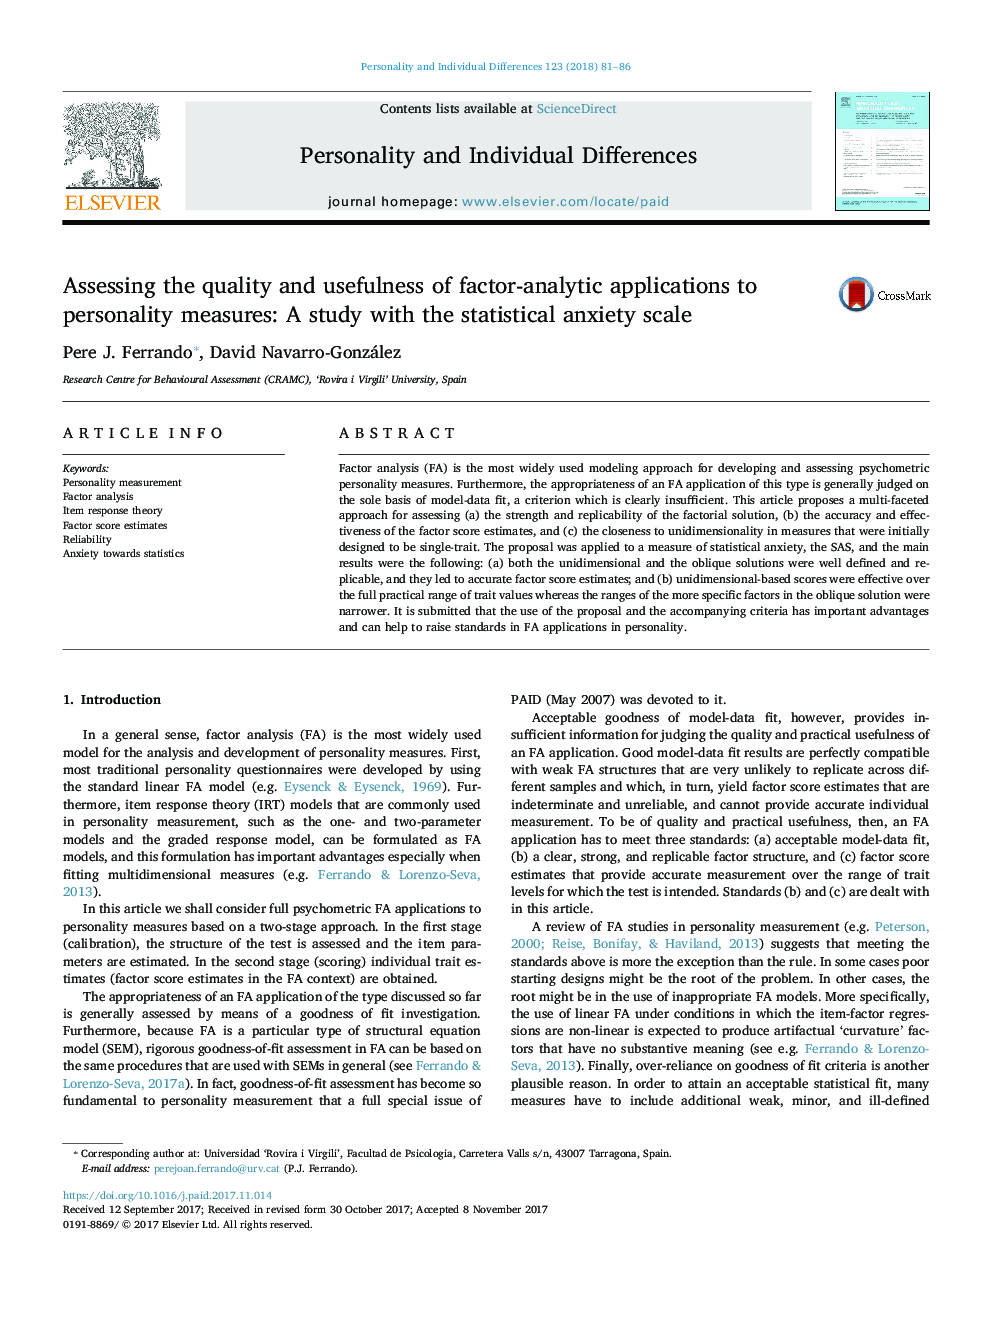 ارزیابی کیفیت و سودمندی برنامه های کاربردی تحلیل عاملی به اقدامات شخصی: مطالعه ای با مقیاس اضطراب آماری 